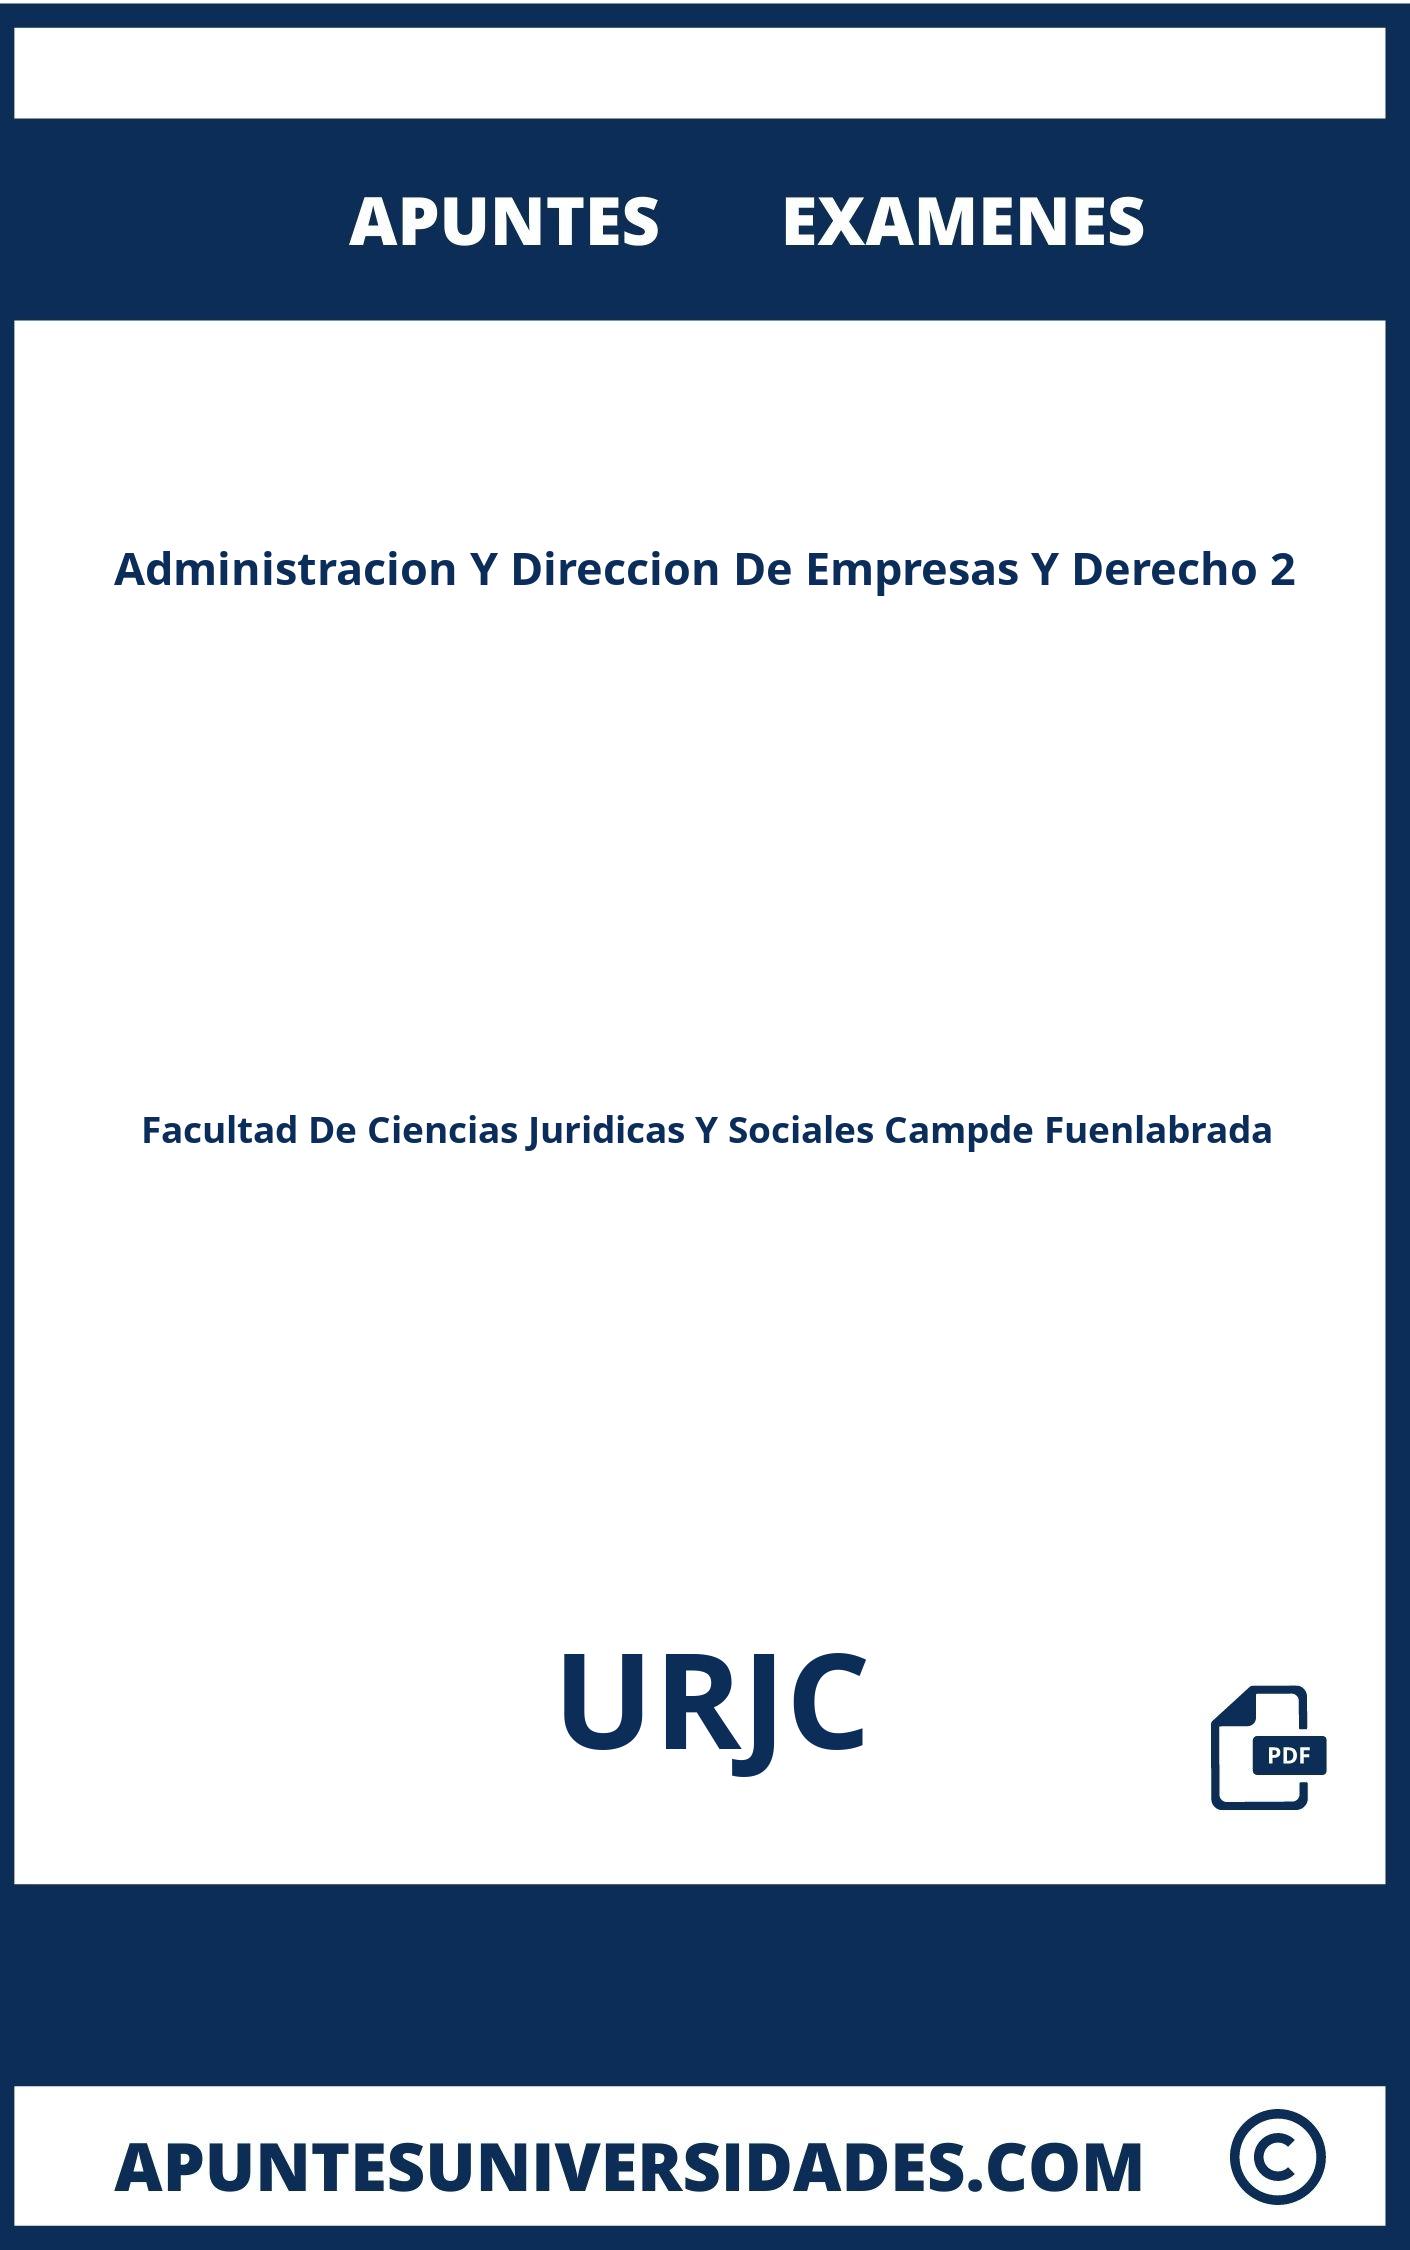 Examenes y Apuntes de Administracion Y Direccion De Empresas Y Derecho 2 URJC